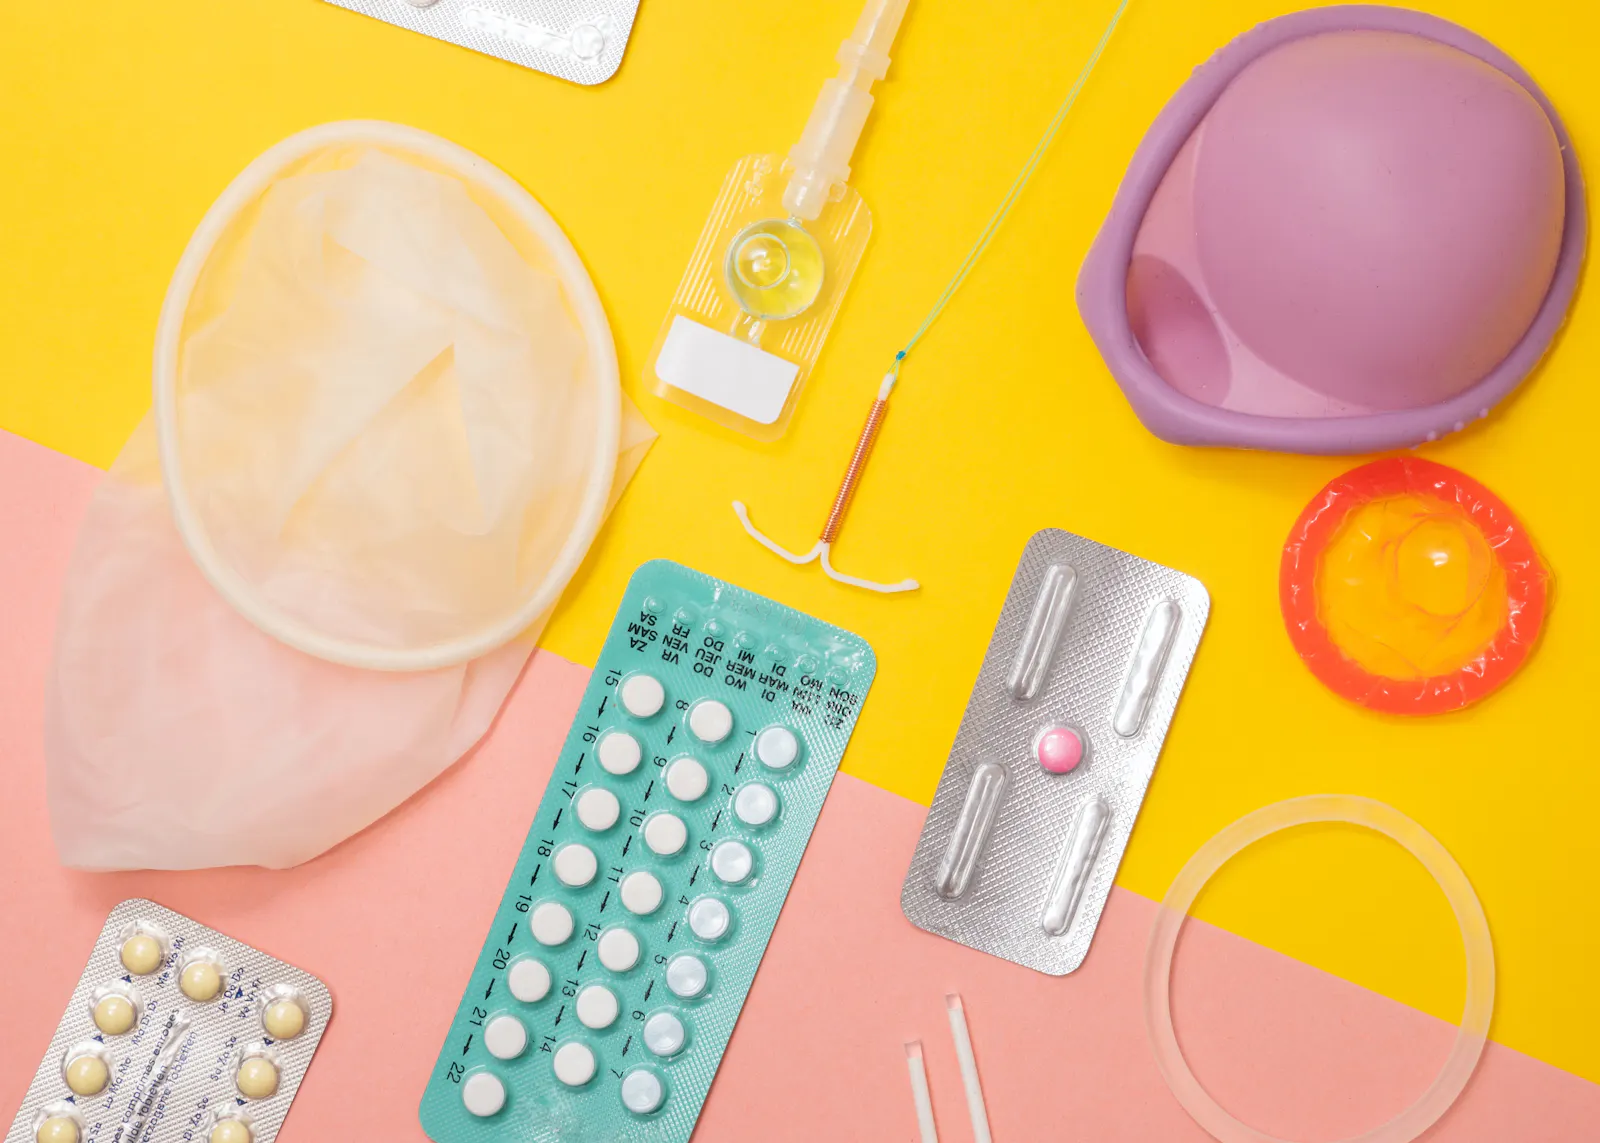 Verschiedene Verhütungsmittel, darunter die Pille in einem Blister, Diaphragma oder Kondom auf einem pink-gelbem Untergrund.